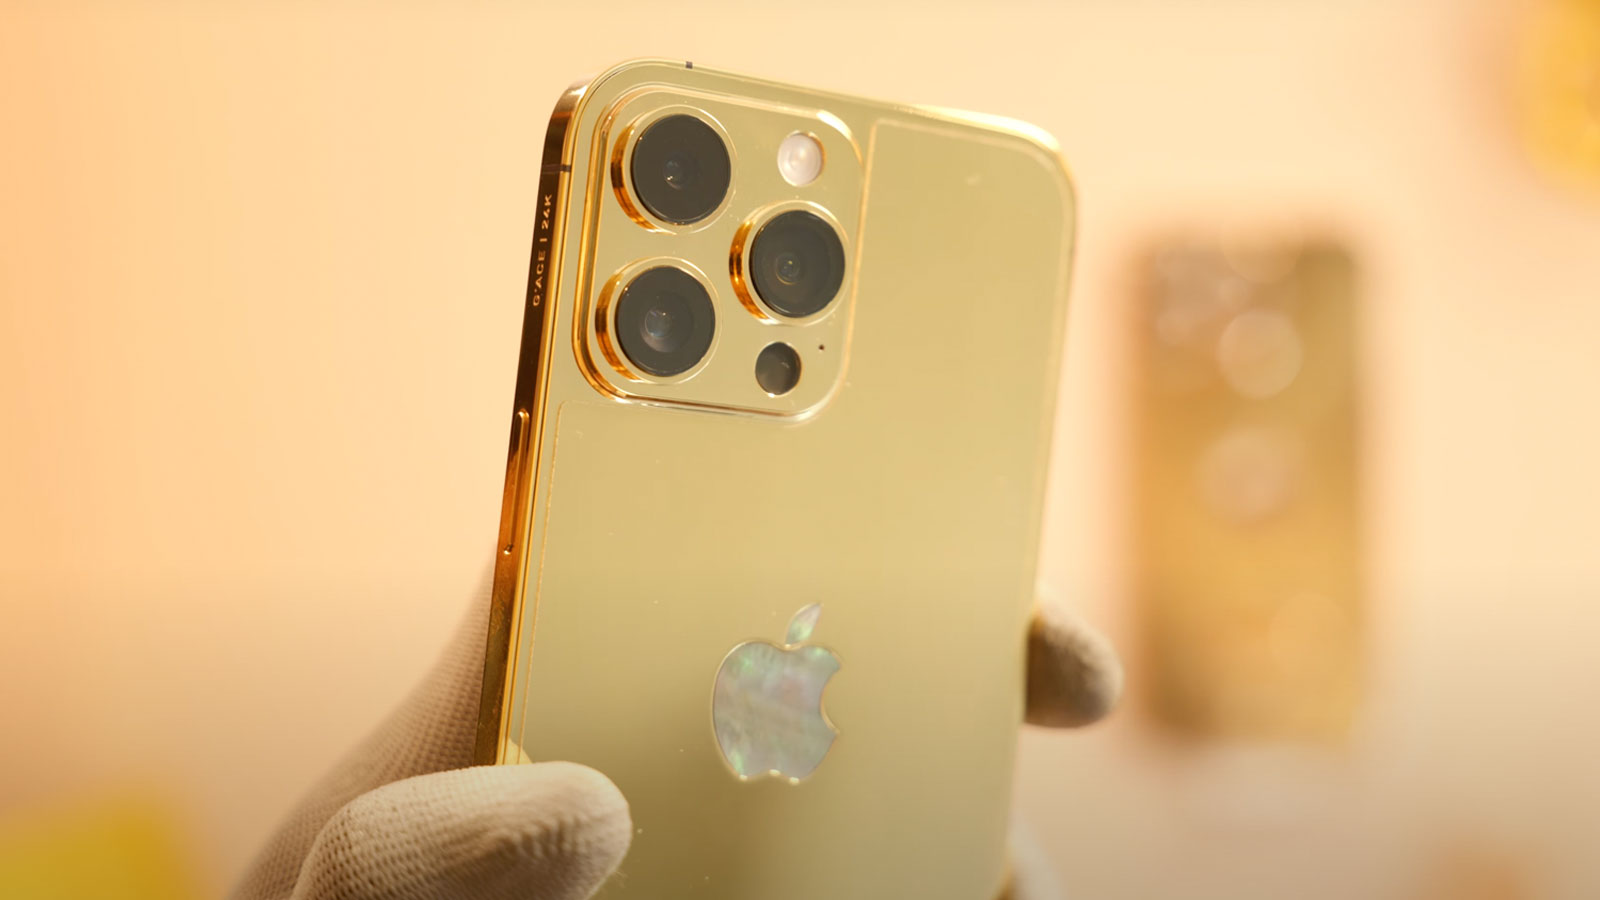 Bạn luôn muốn sở hữu sự khác biệt và độc đáo? Hãy khám phá ngay iPhone 14 Pro Max mạ vàng đính kim cương, sản phẩm sang trọng, quý phái và độc đáo đến từng chi tiết. Với kim cương đính kèm, nó không chỉ là một chiếc điện thoại thông thường mà còn là một tác phẩm nghệ thuật.